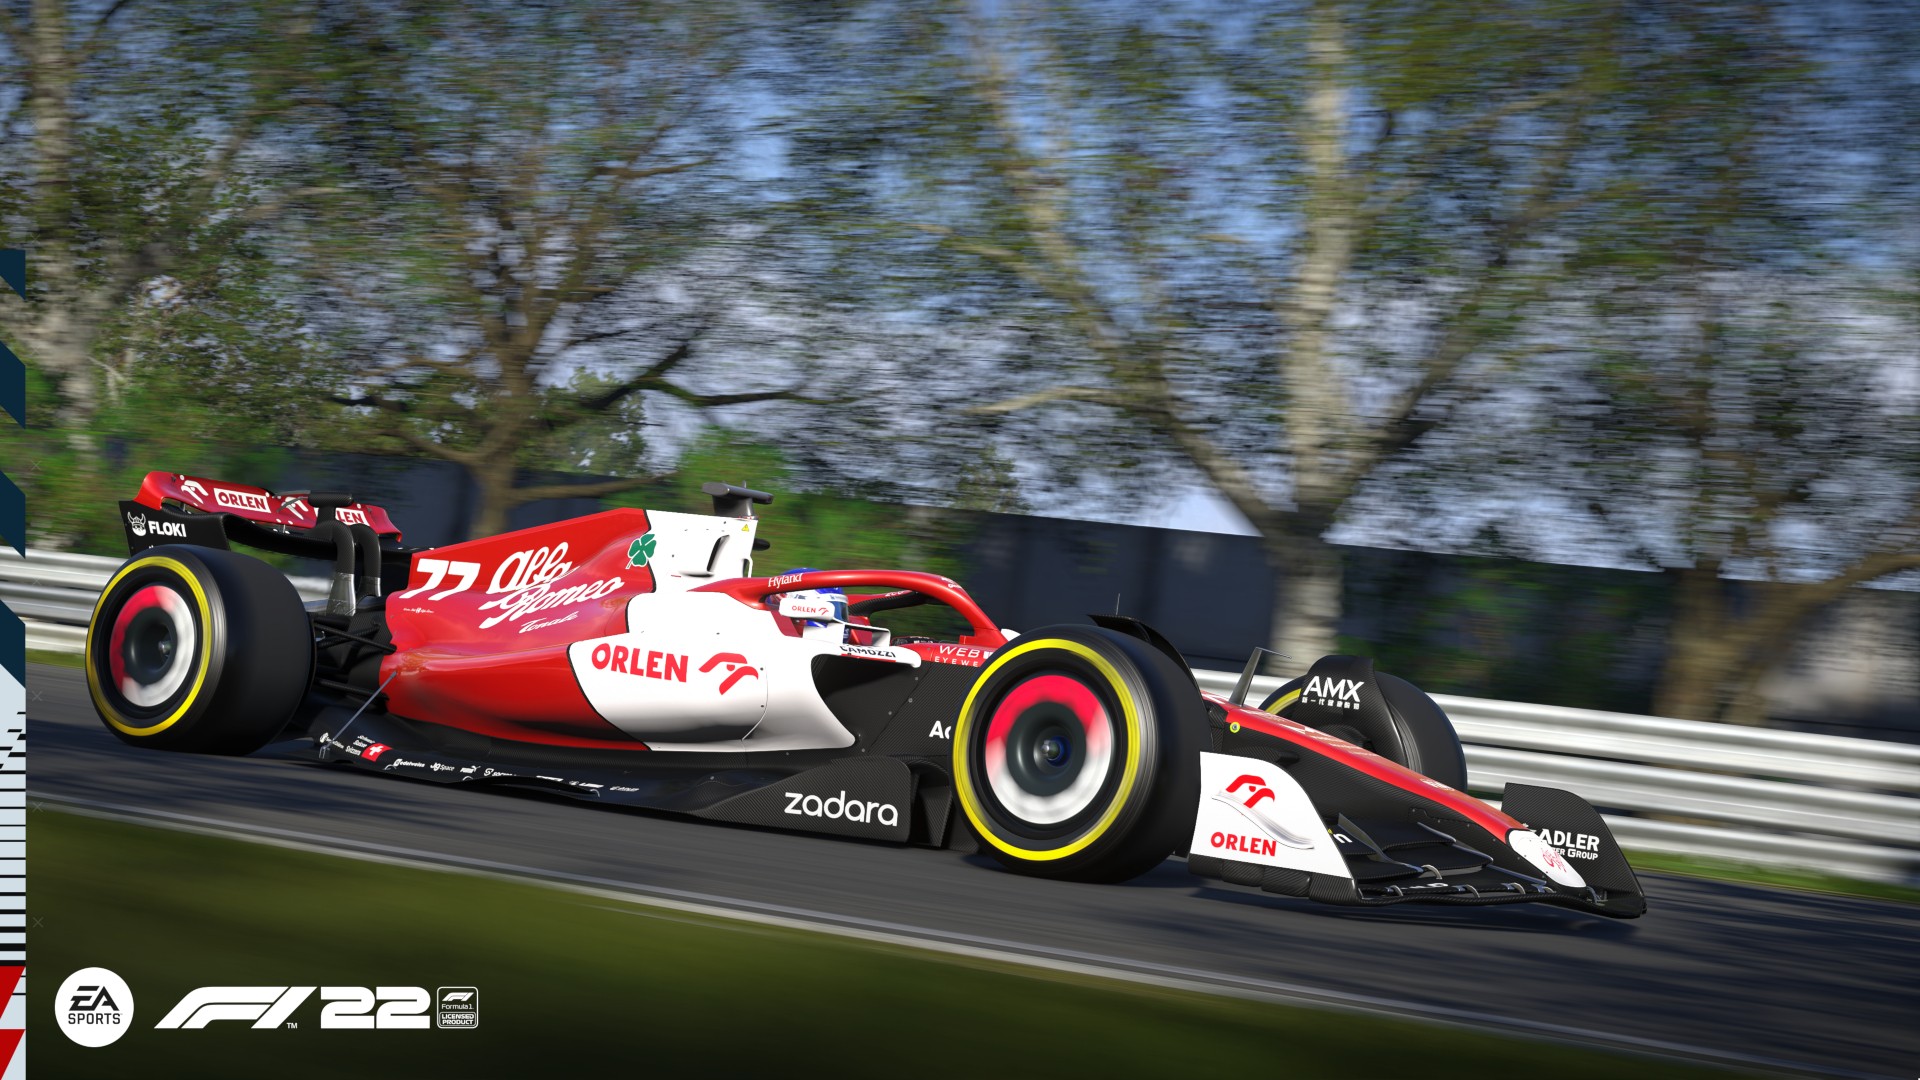 F1 22 cross-play beta Weekend 